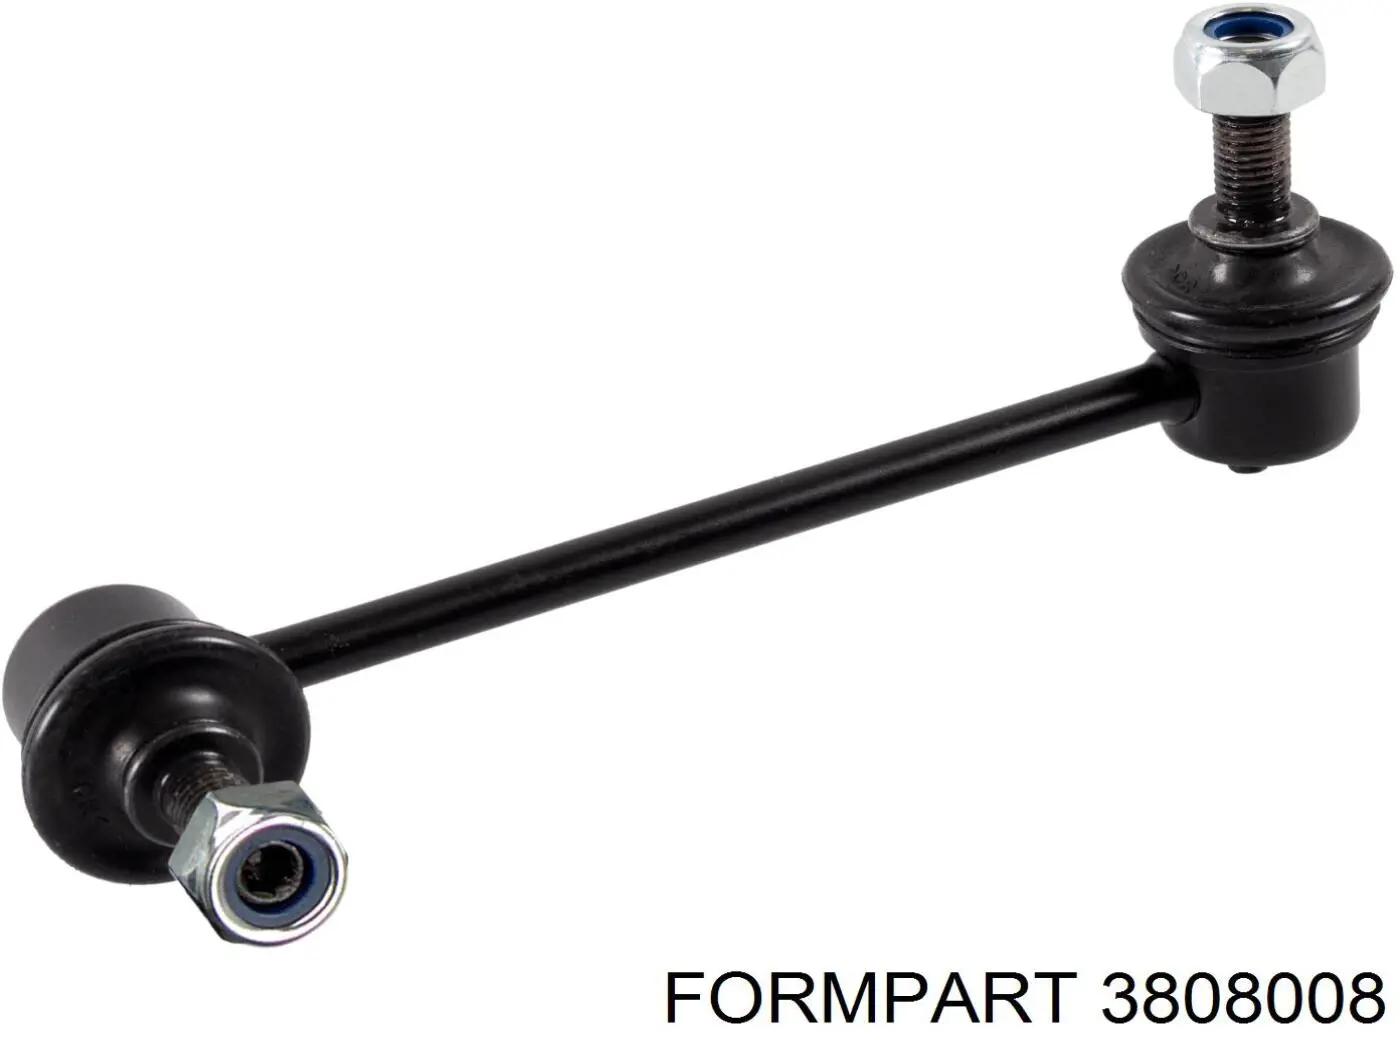 3808008 Formpart/Otoform стойка стабилизатора переднего левая